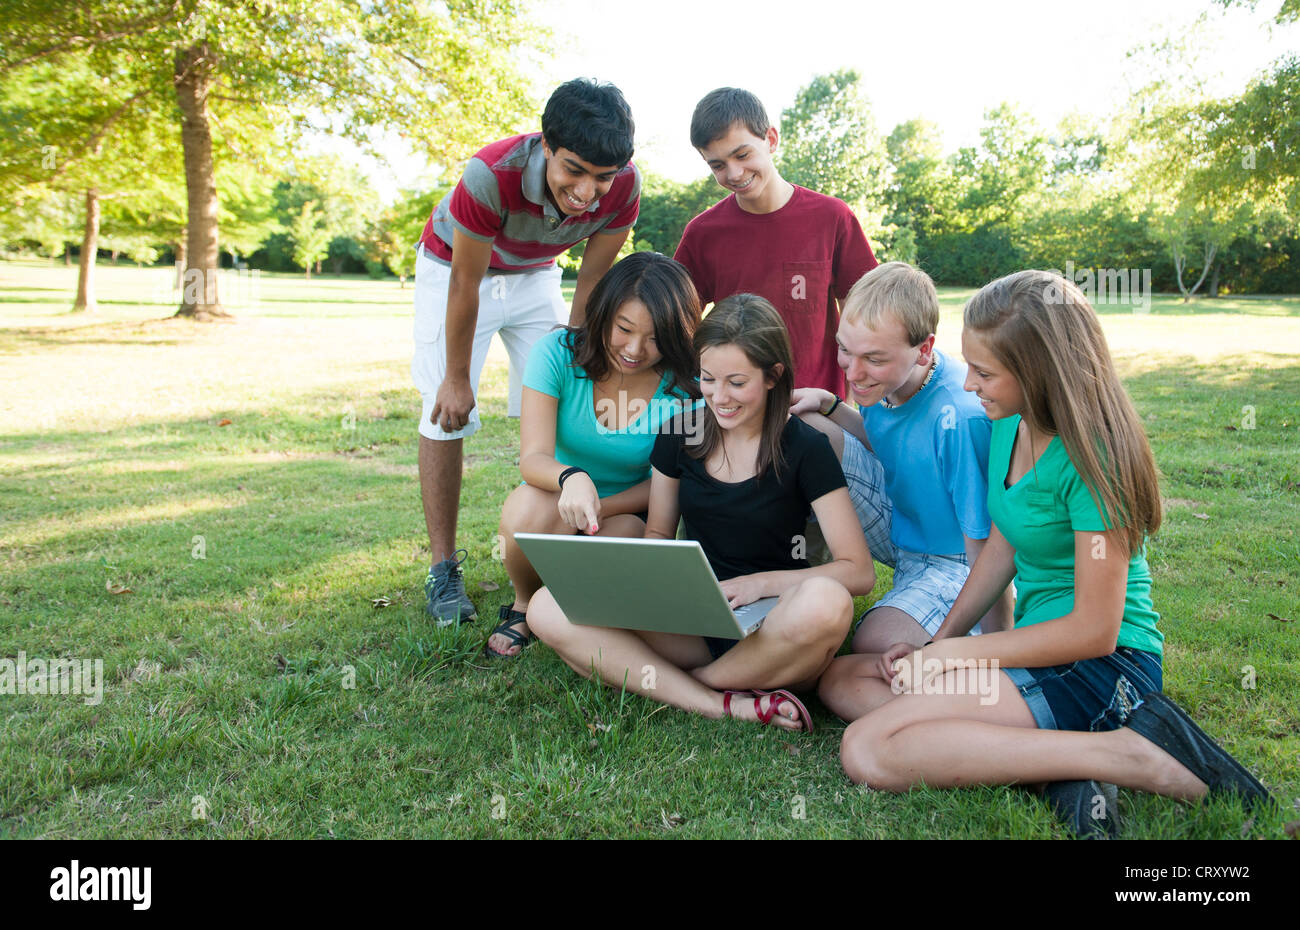 Divers Groupe d'adolescents à la recherche d'un ordinateur à l'extérieur Banque D'Images